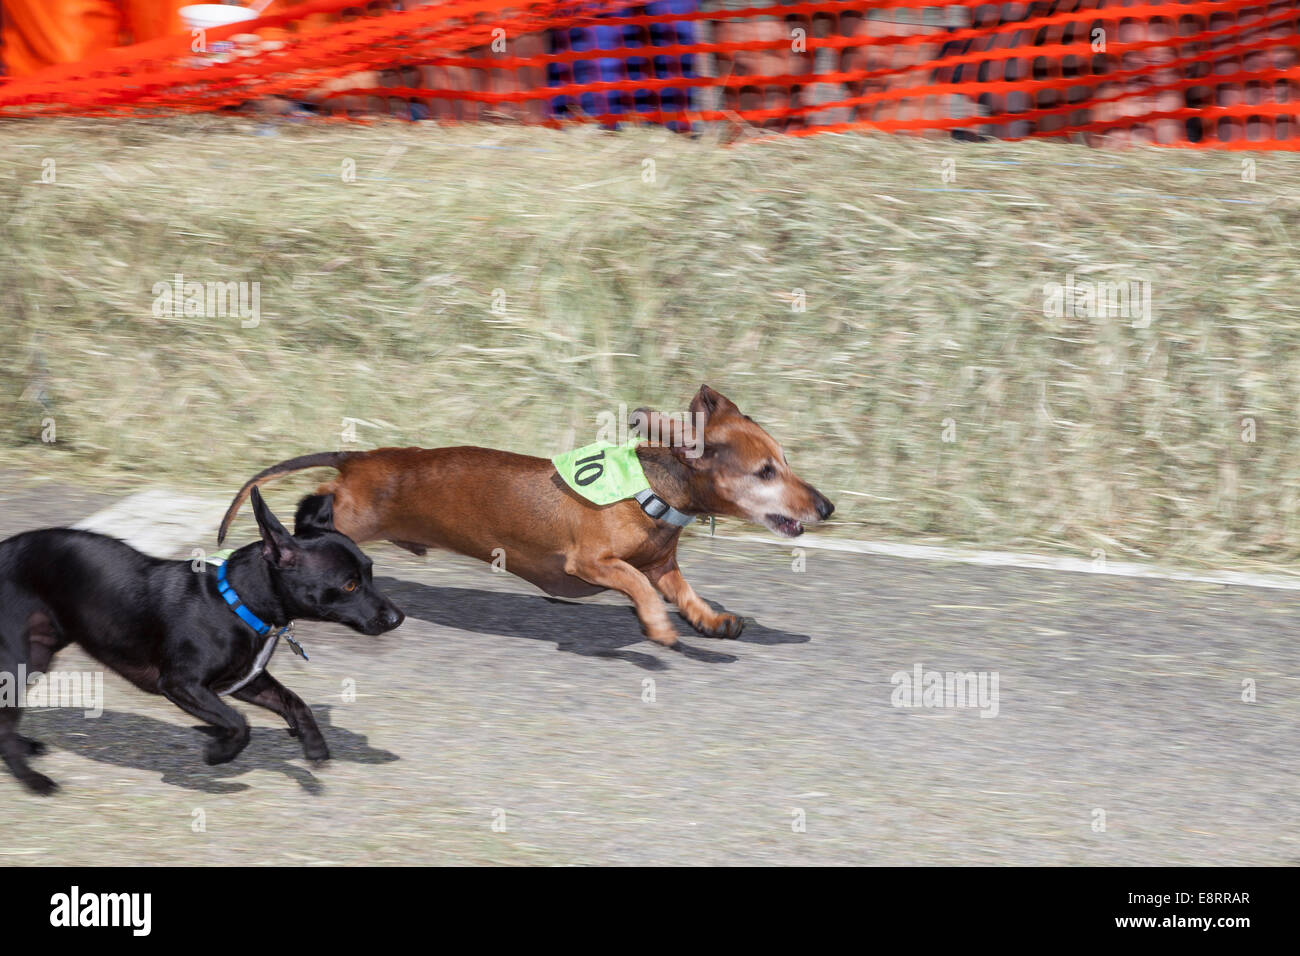 Wiener dog race à jours Daly à Hamilton -Ravalli Comté, Montana, USA Banque D'Images